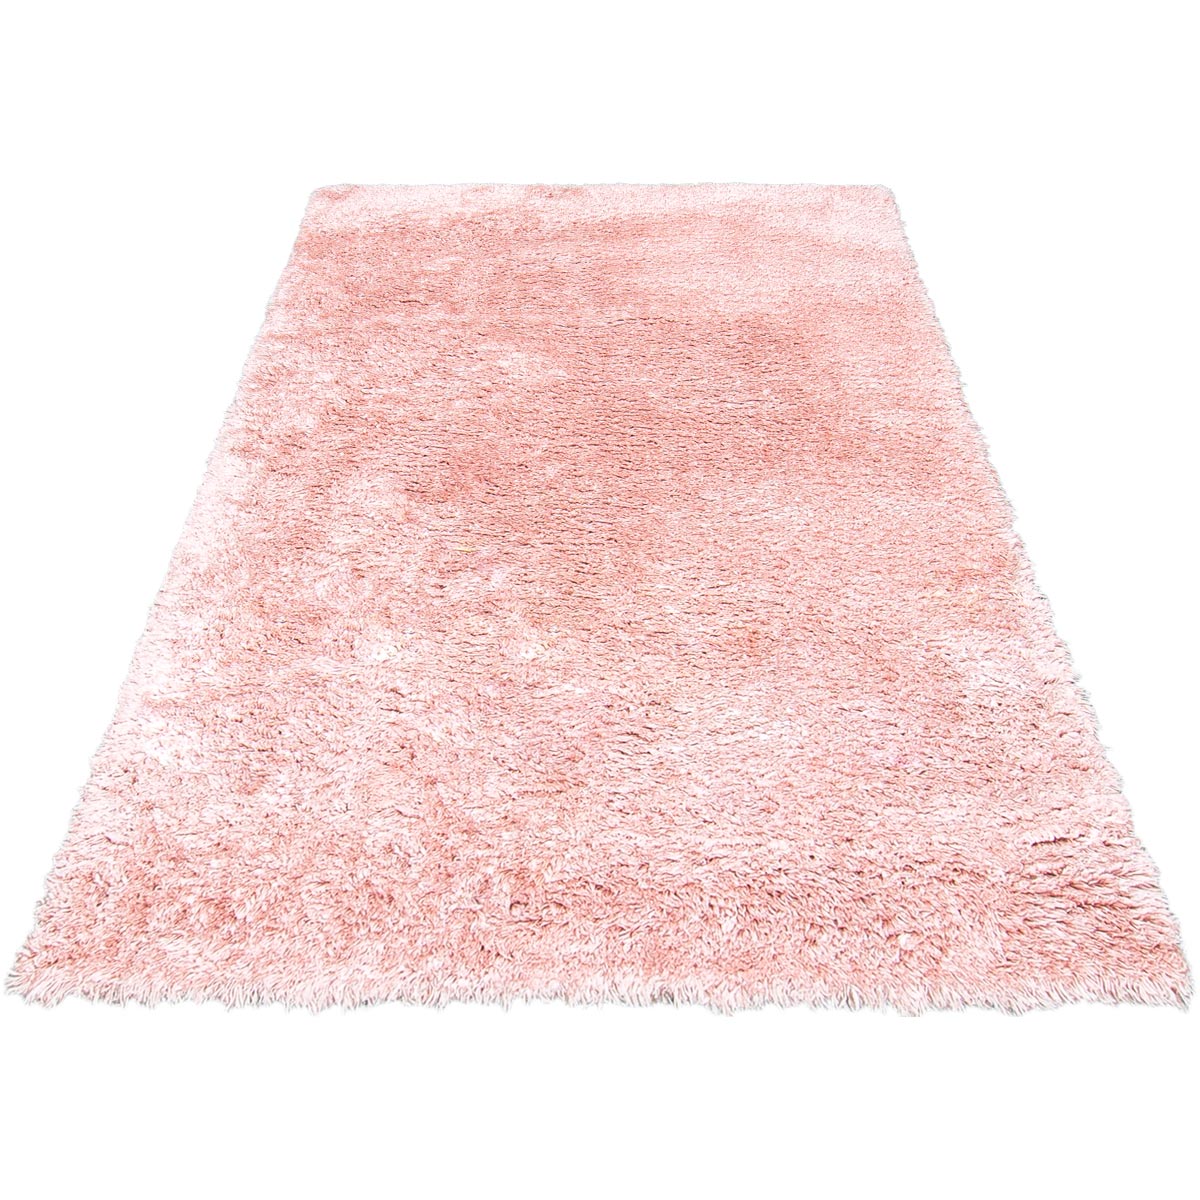 שטיח שאגי קטיפה 01 ורוד בהיר | השטיח האדום